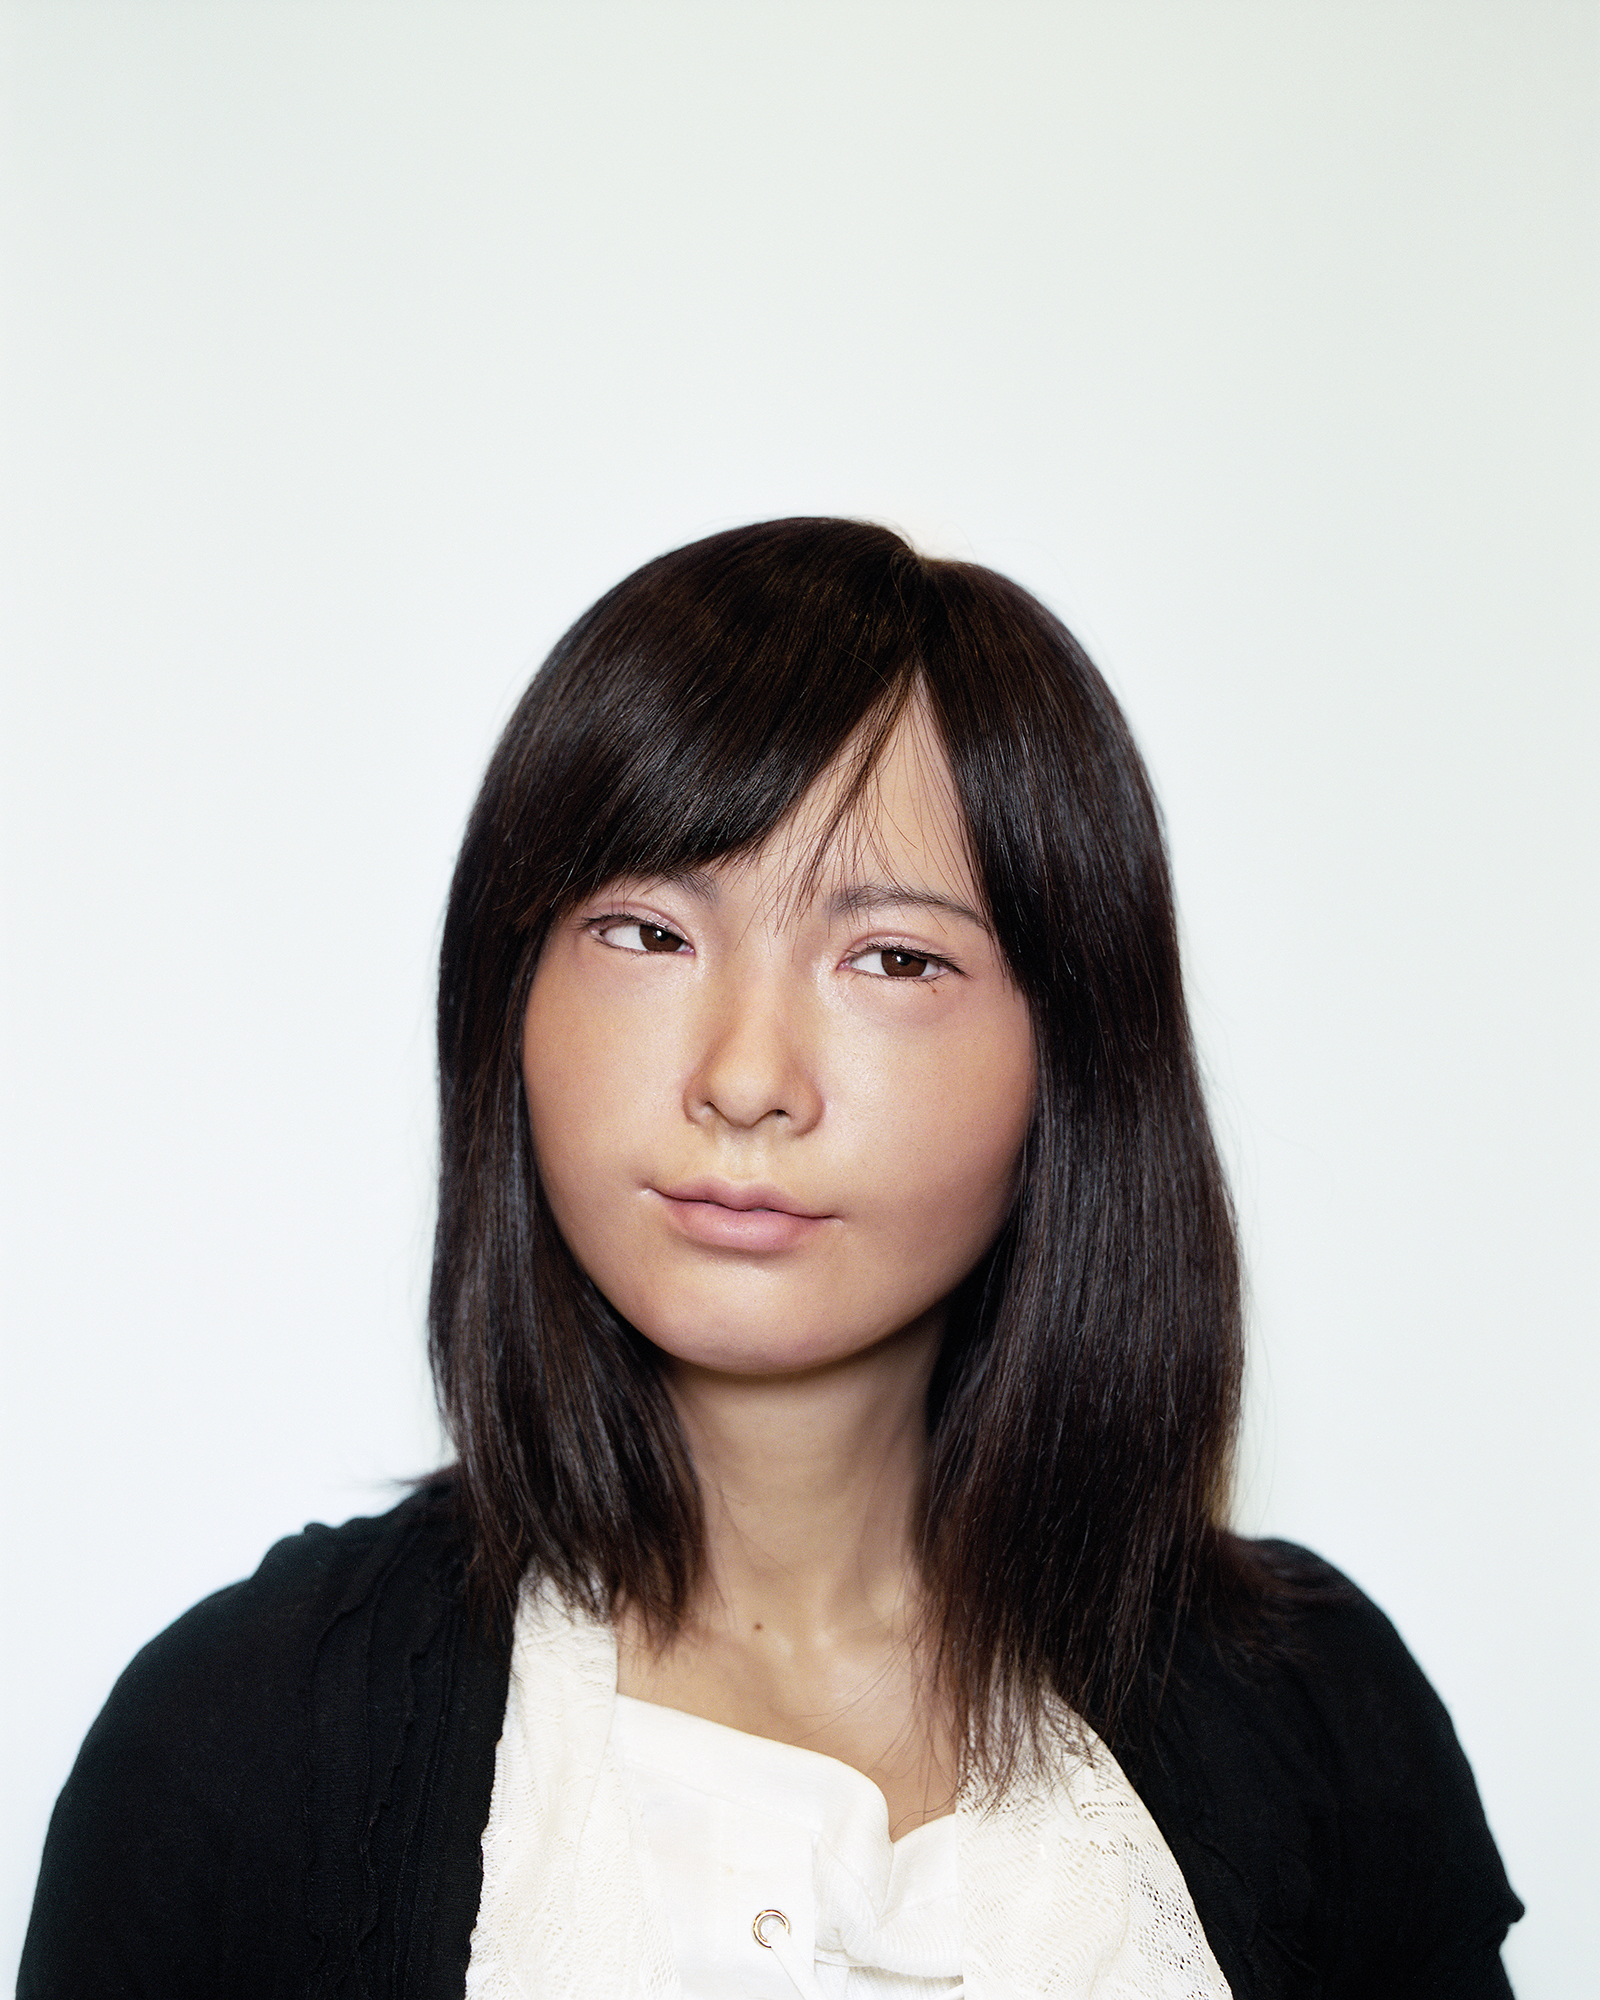   Asuna , 2015  A-Lab, Japan 